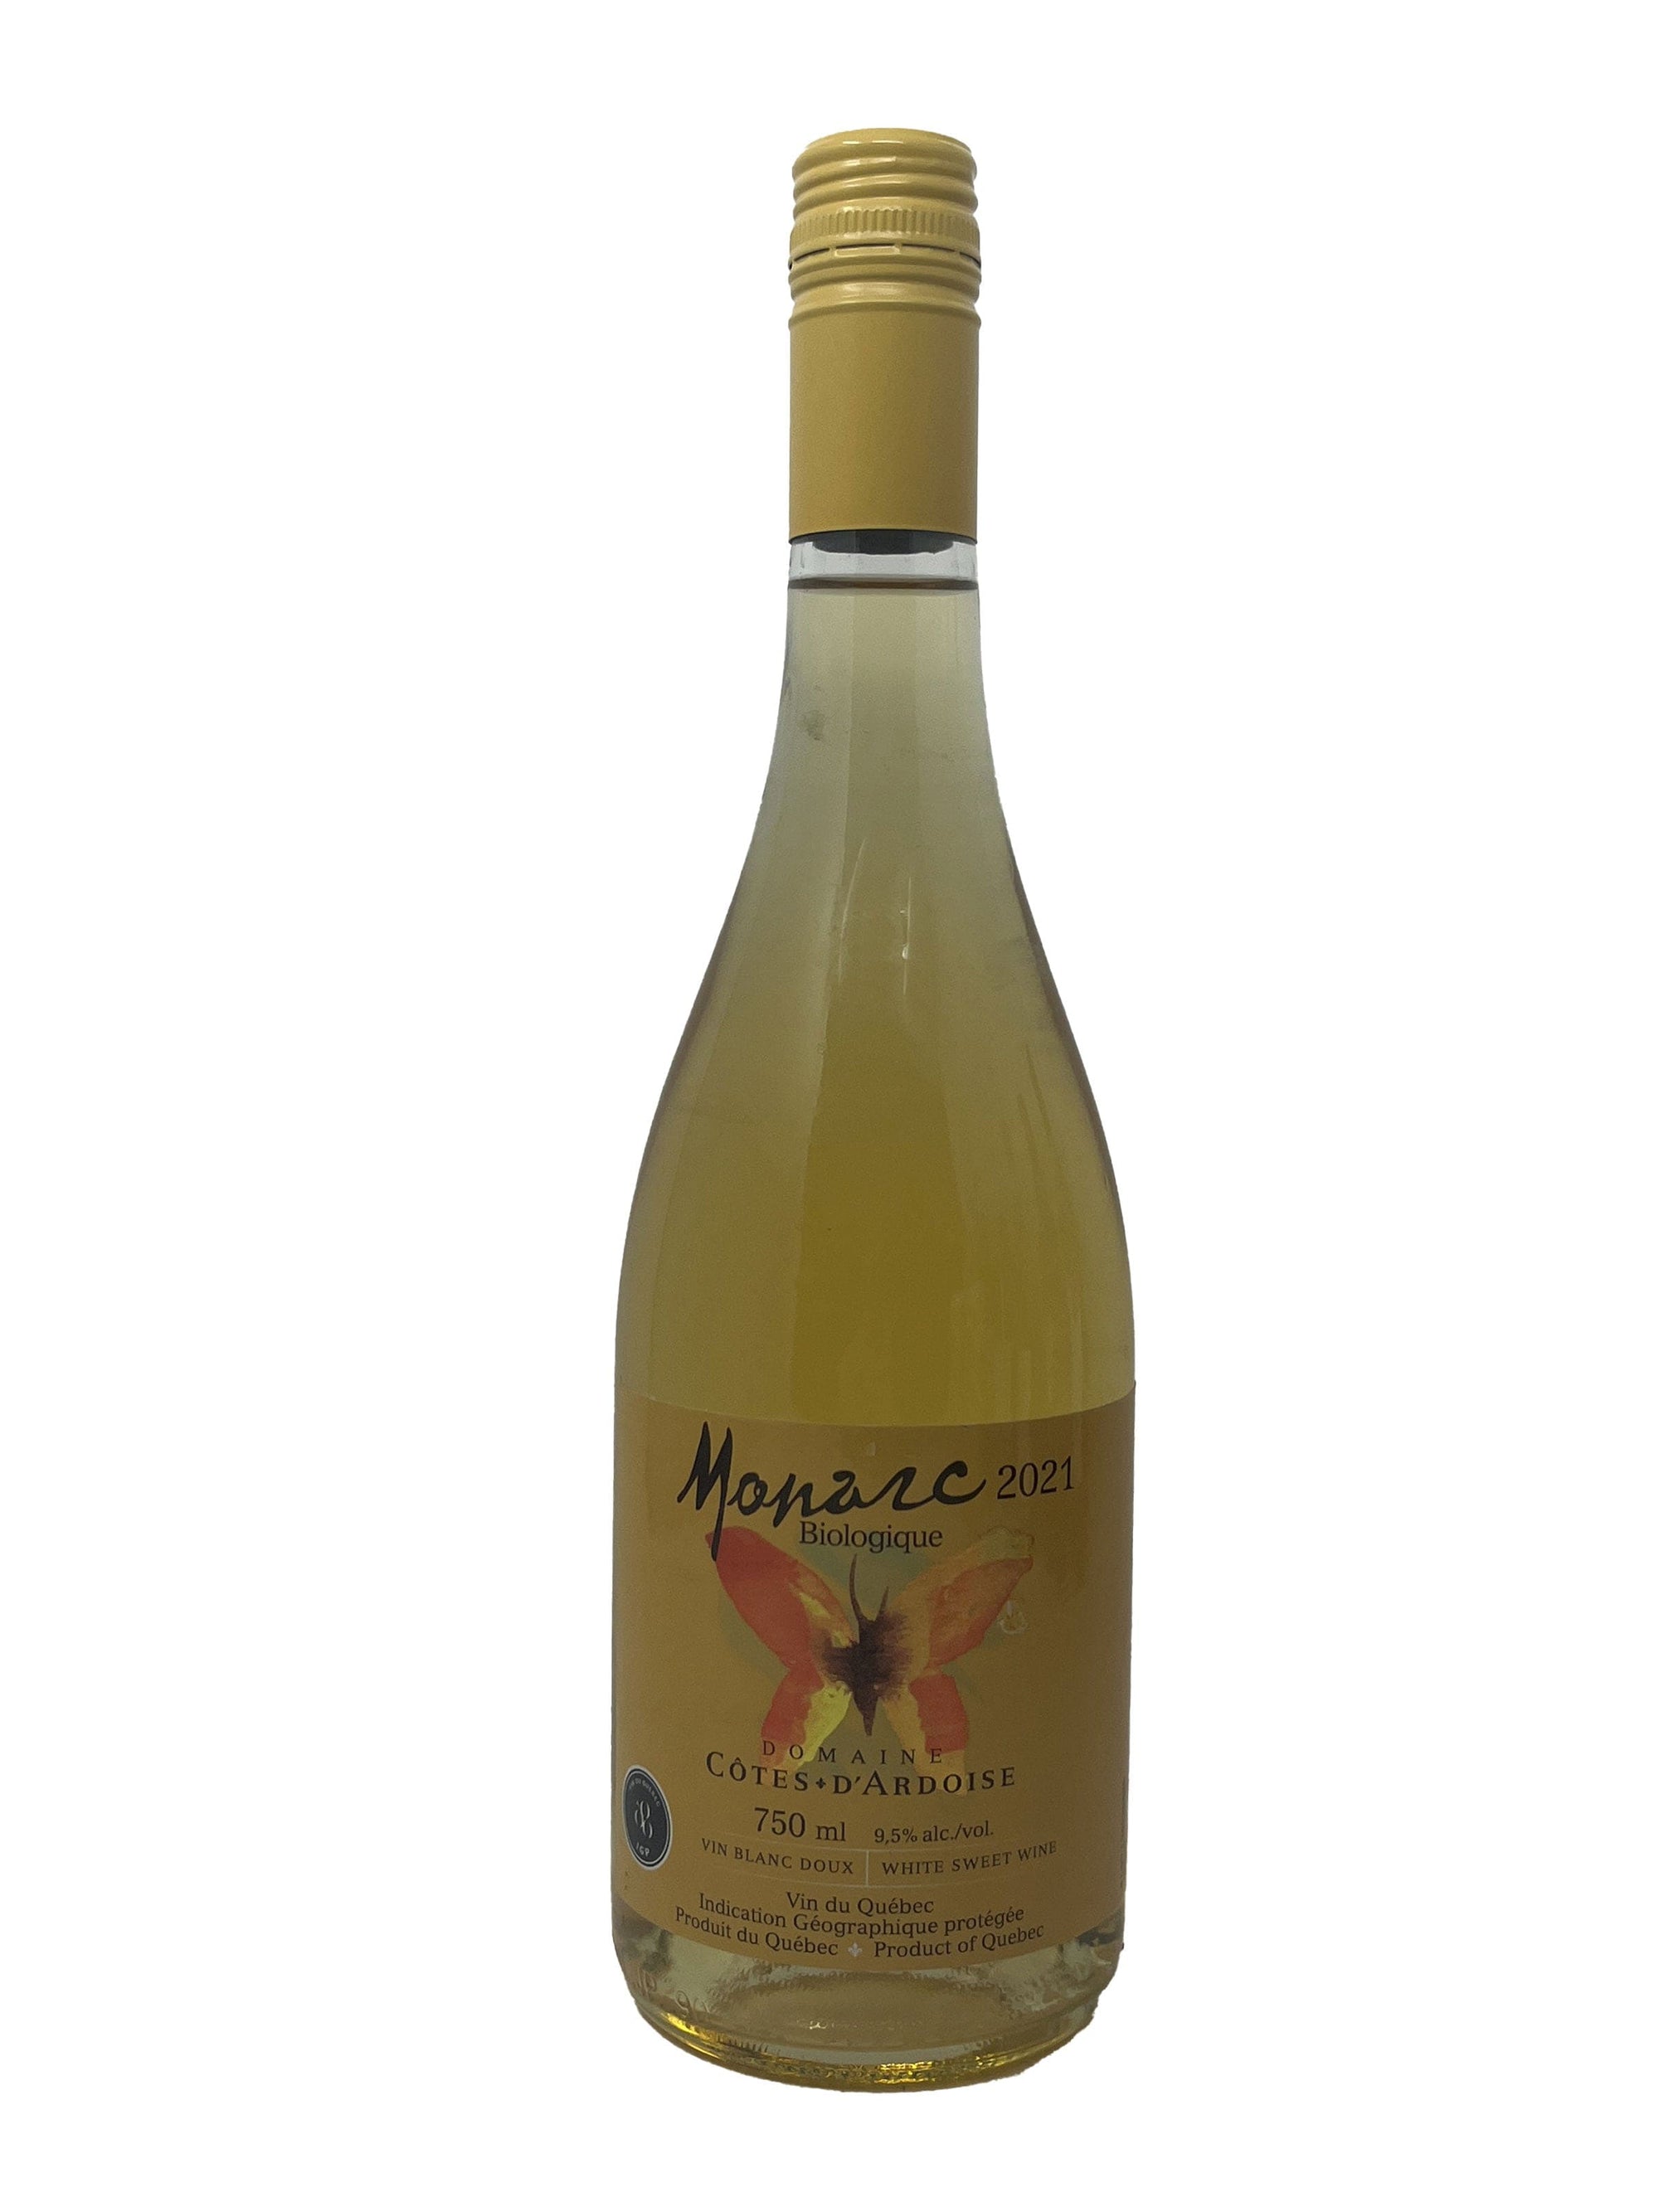 Domaine des Côtes d'Ardoise vin Monarc 2021 2021 - Vin Blanc biologique du Domaine Côtes d'Ardoise